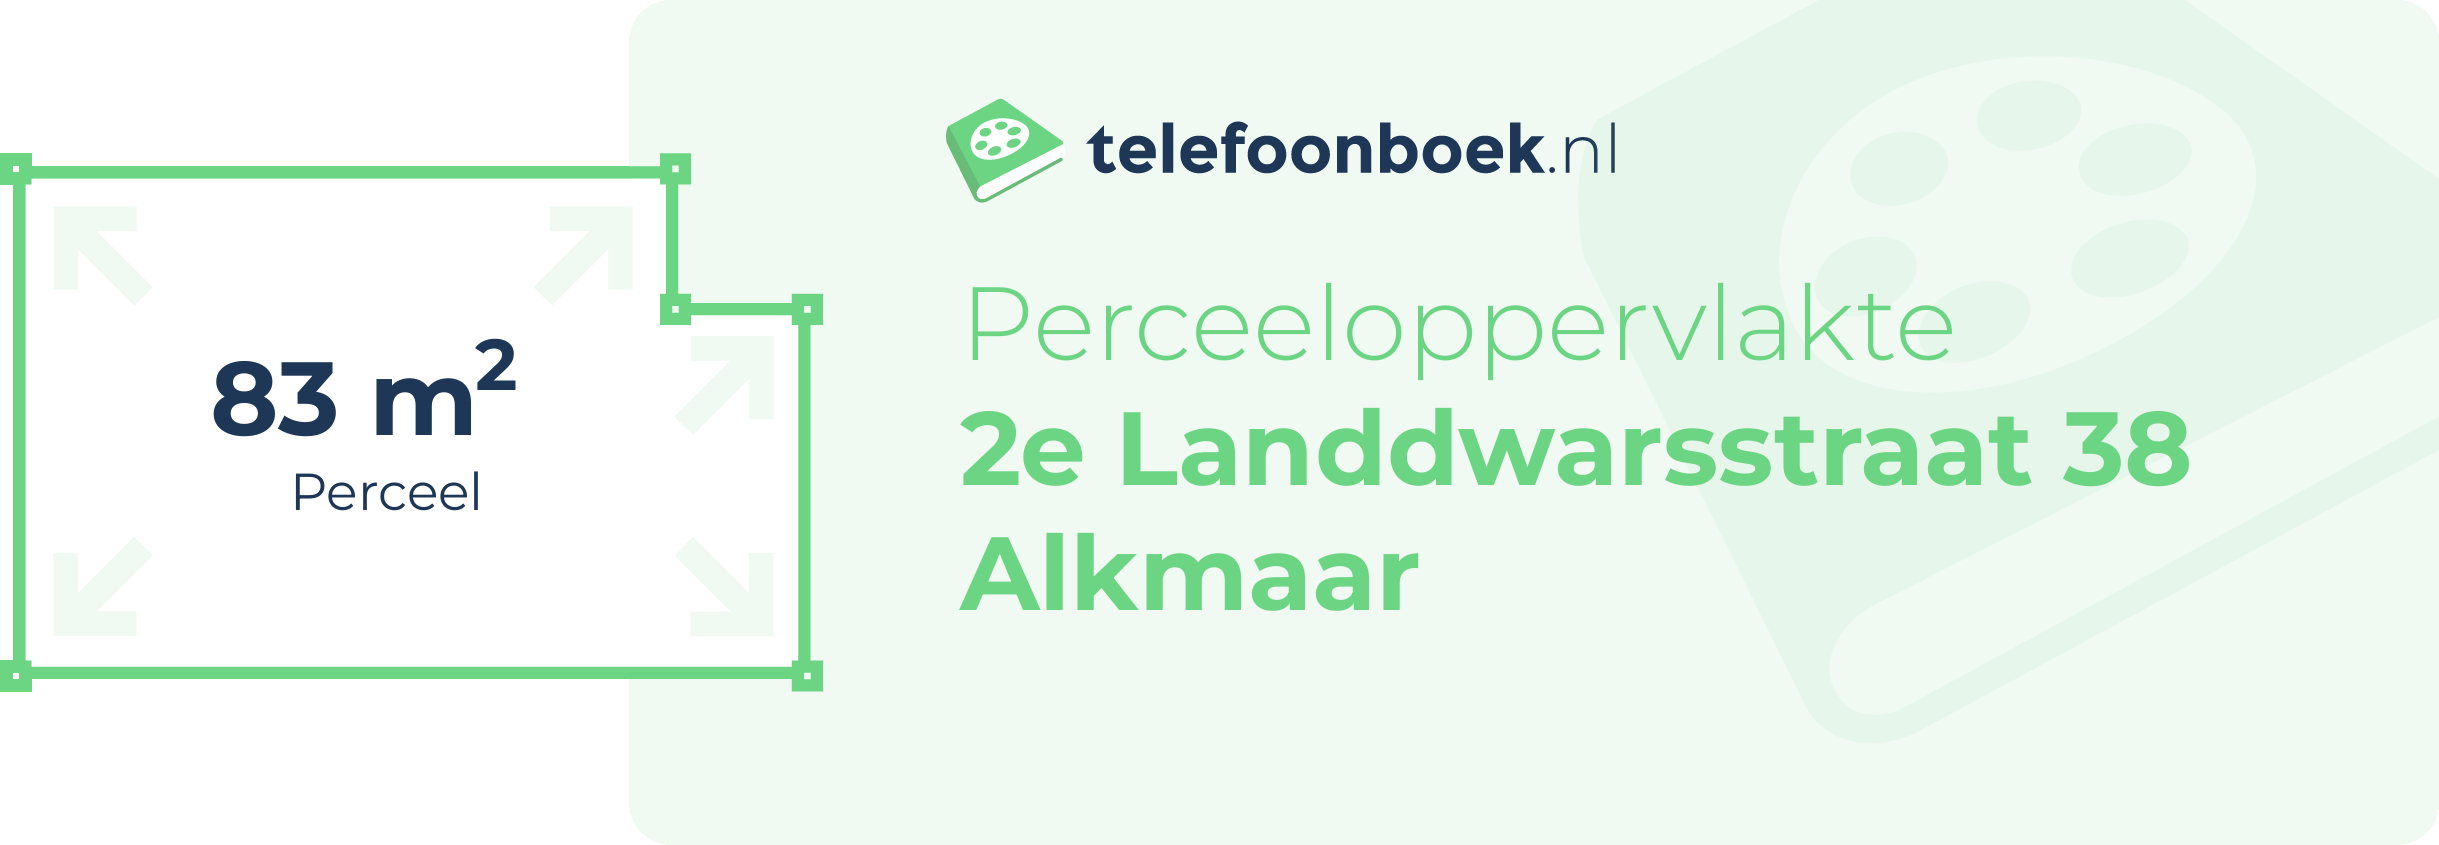 Perceeloppervlakte 2e Landdwarsstraat 38 Alkmaar